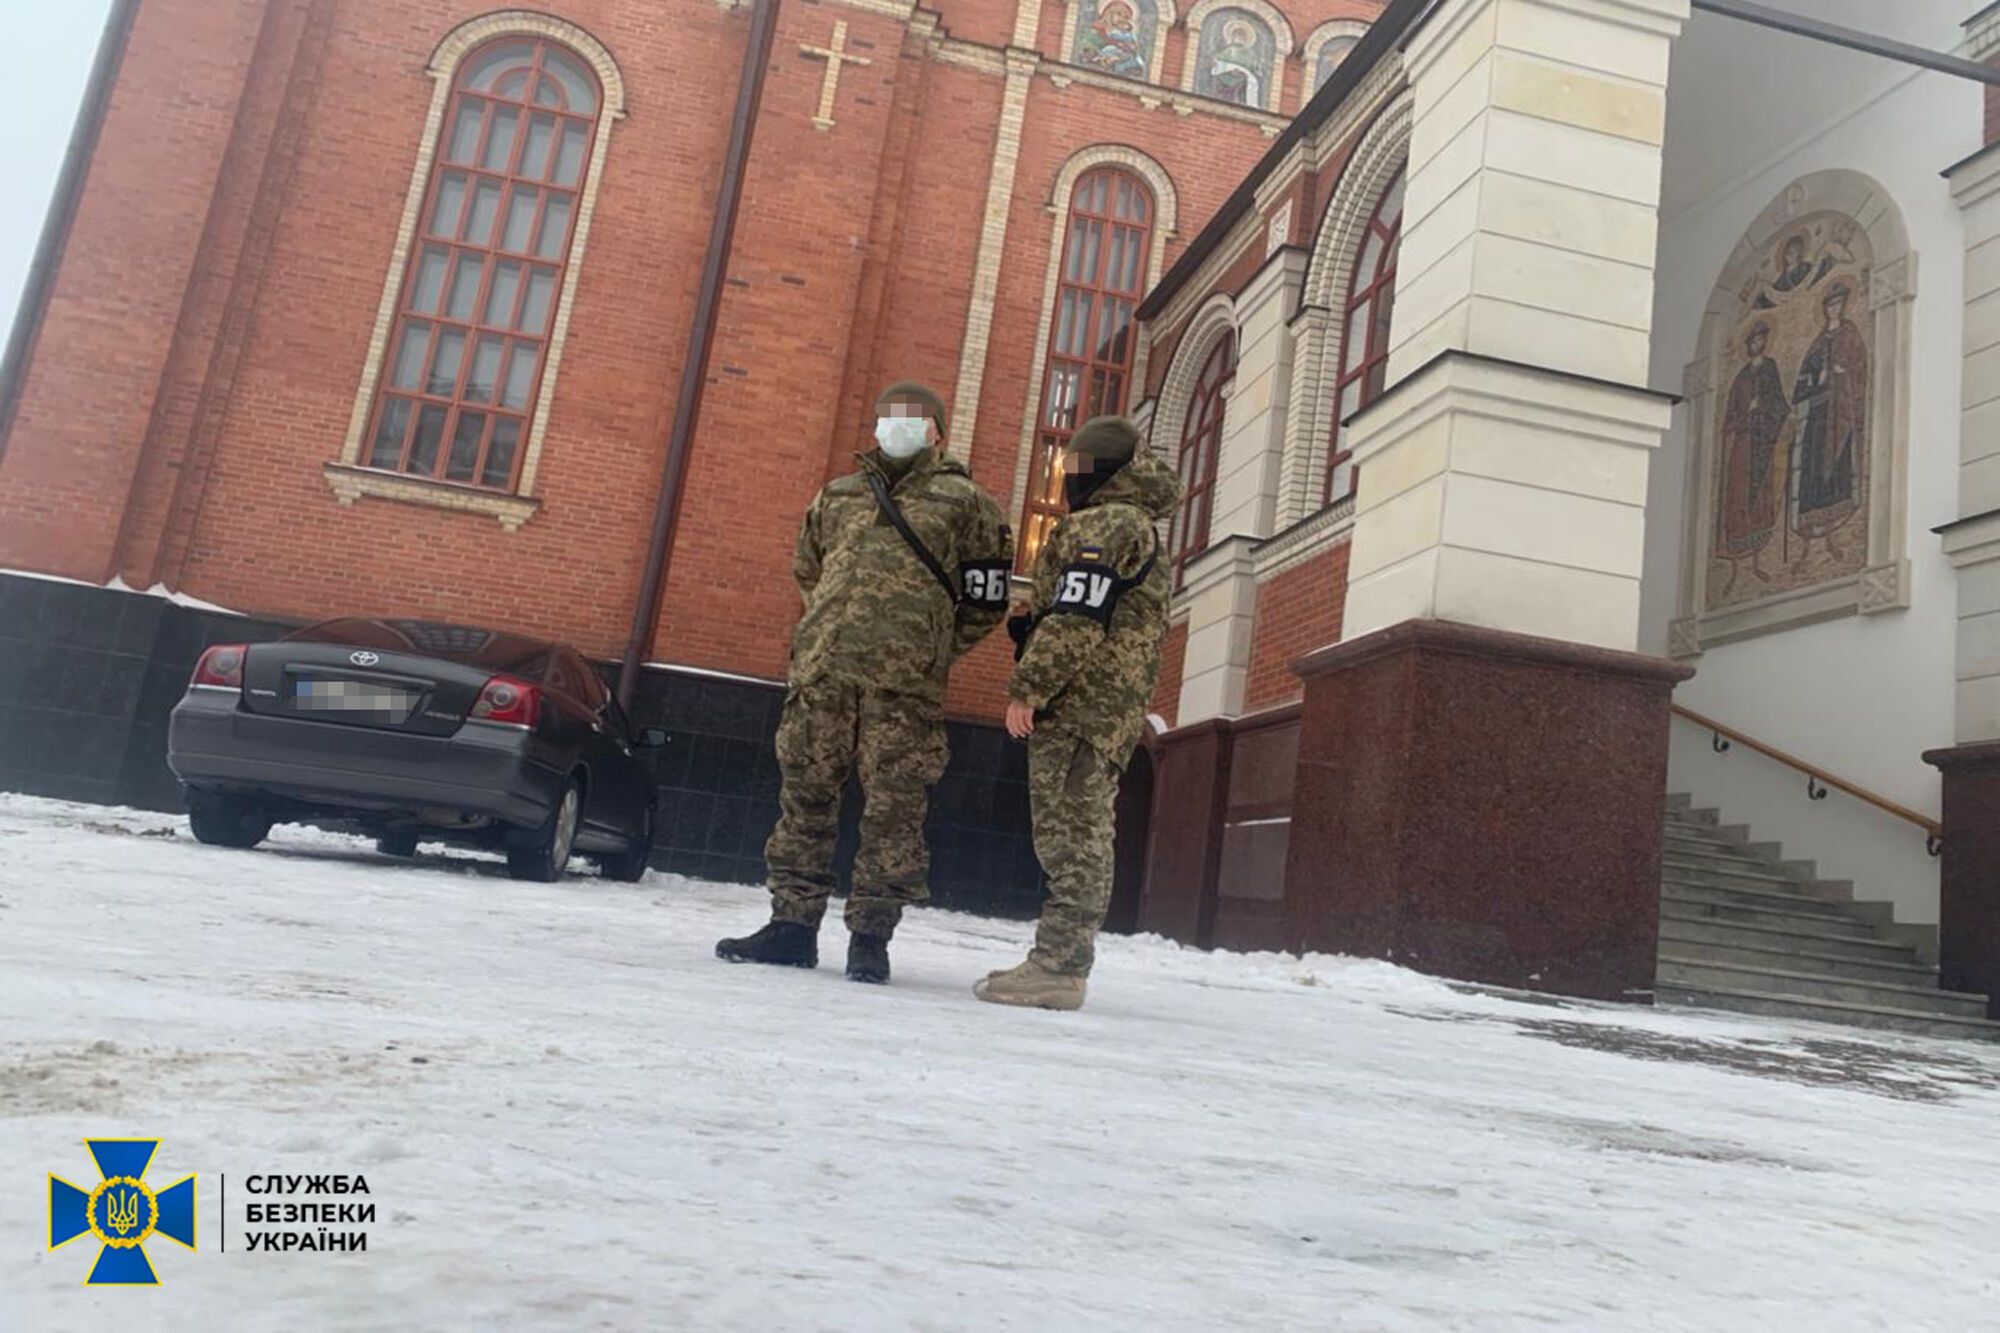 СБУ пришла в Свято-Покровский собор УПЦ МП в Борисполе: служителей проверяют на связи с оккупантами. Фото